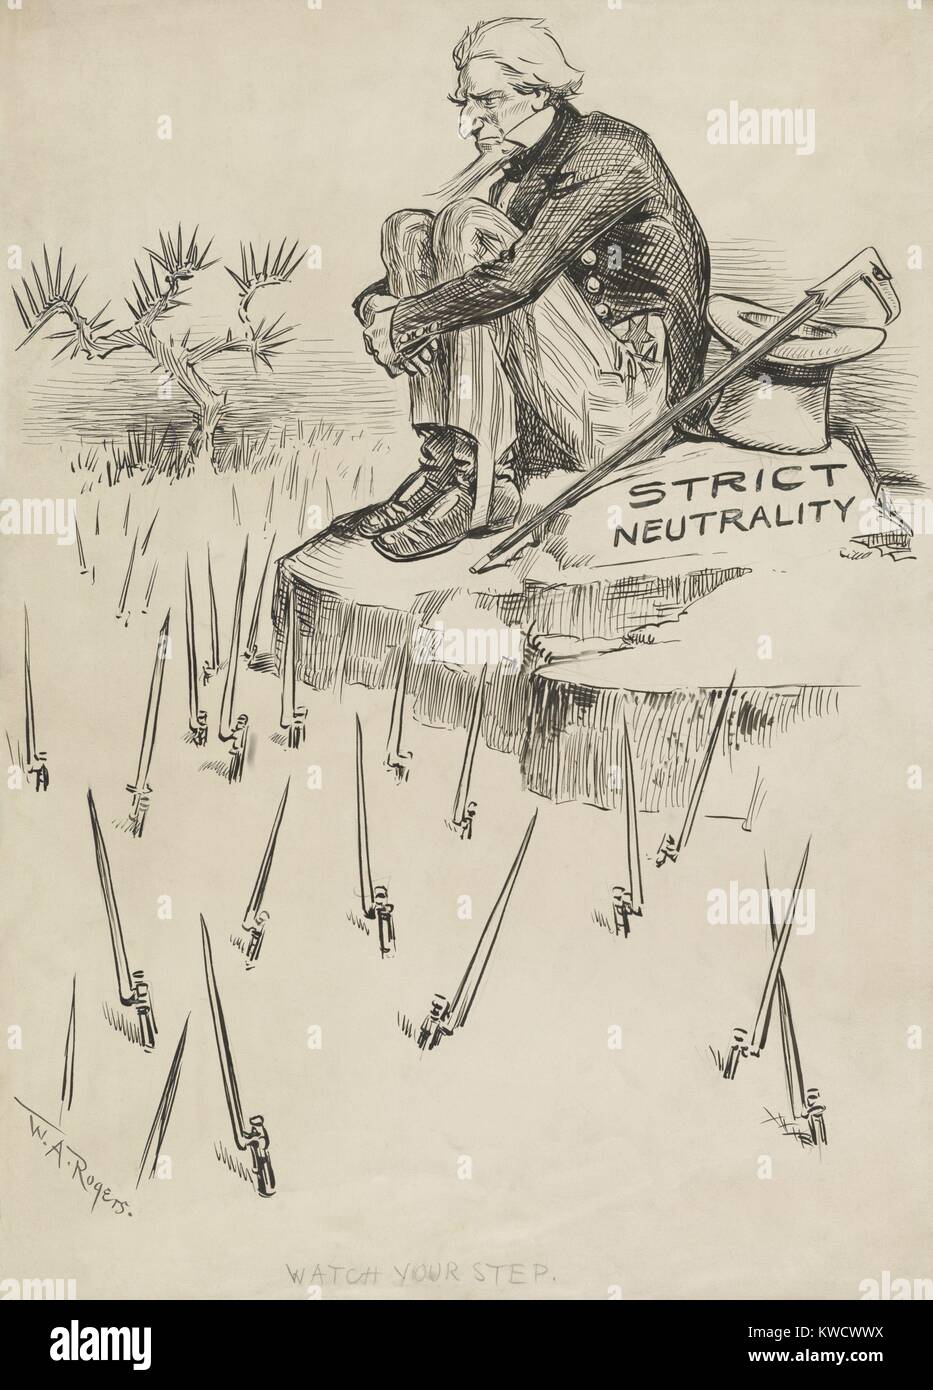 Passen Sie Ihren Schritt, politische Karikatur eines strikt neutral Uncle Sam, 1914. Er sitzt auf einem Felsen mit Bajonetten aus dem Boden unter (BSLOC 2017 1 41) Stockfoto